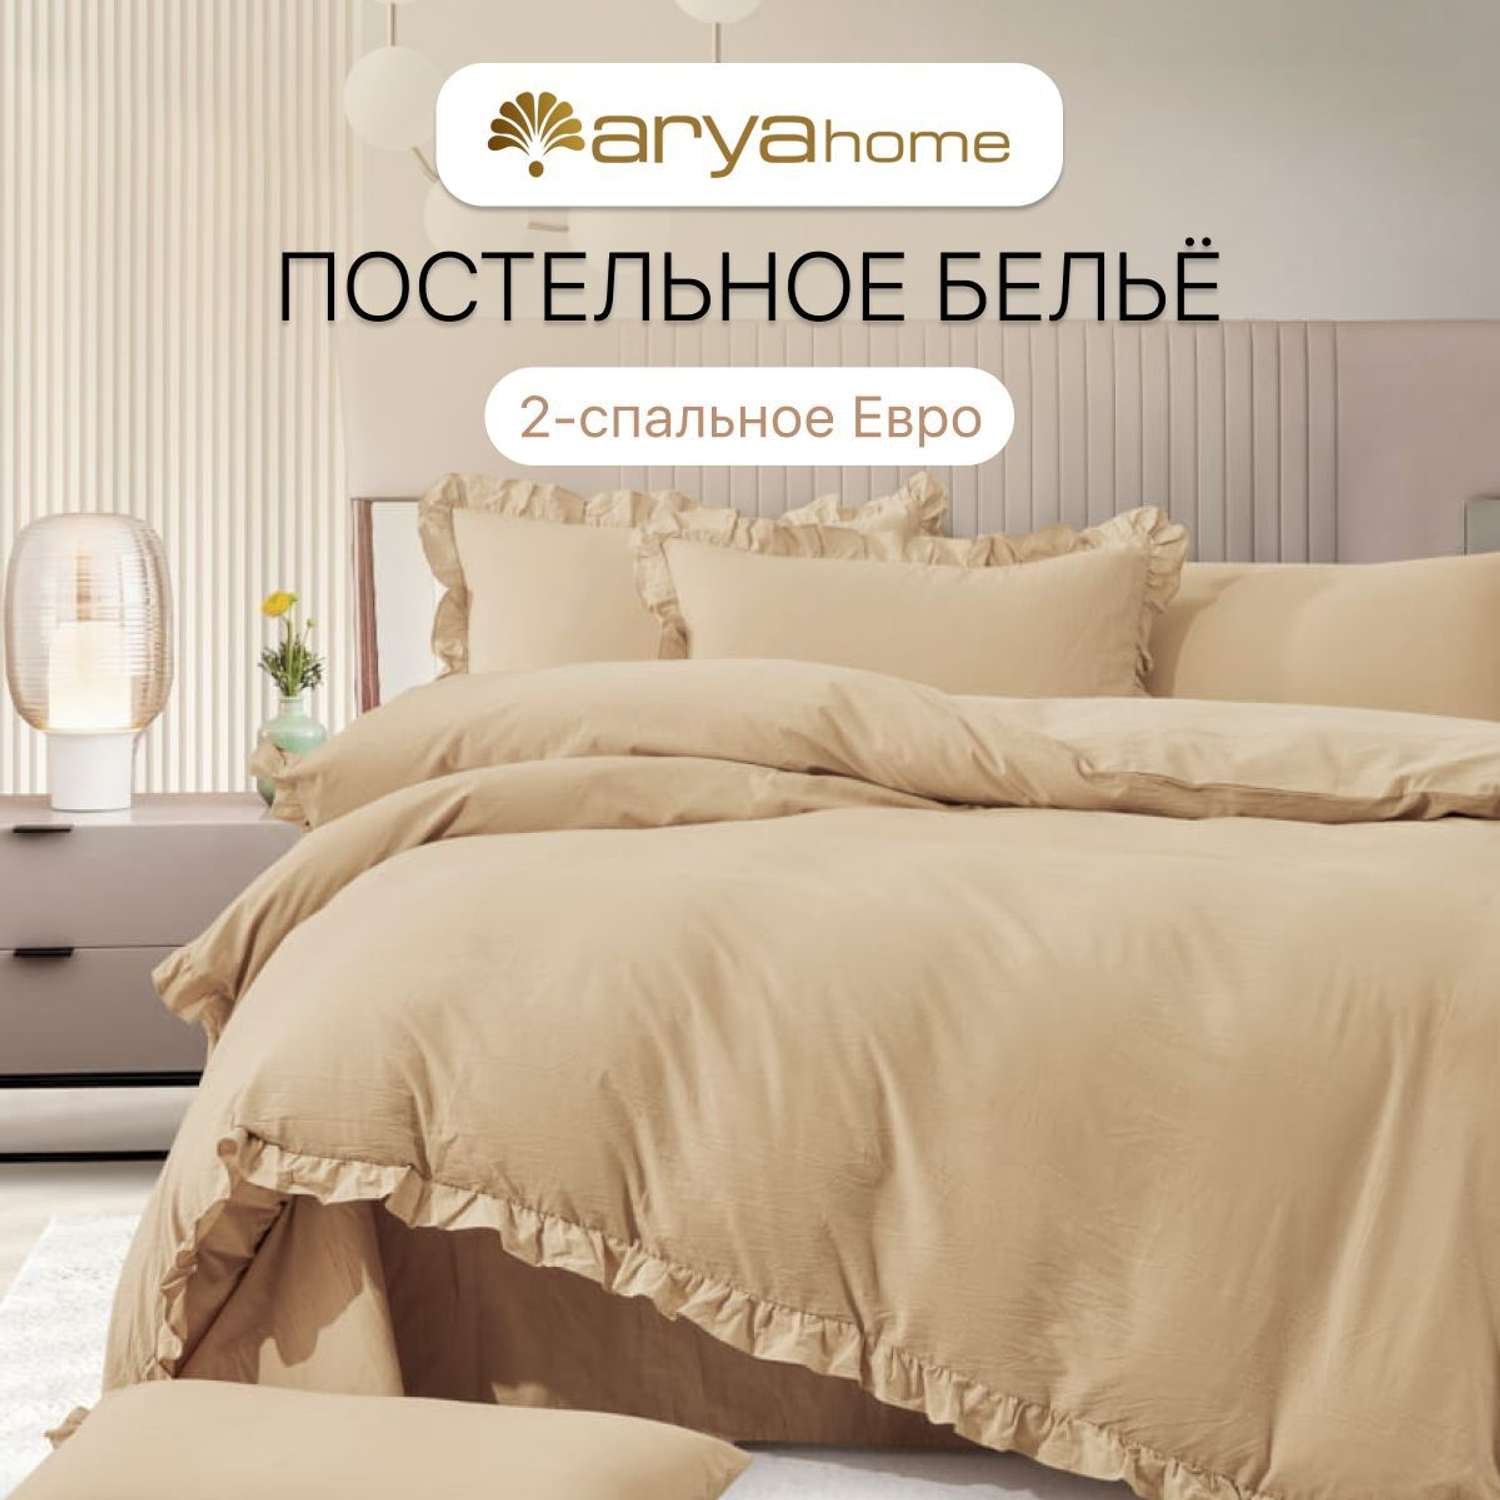 Постельное белье Arya Home Collection 2 спальное евро комплект 200x220 Valensiya сатин 4 наволочки 50х70 с евро простыней - фото 1